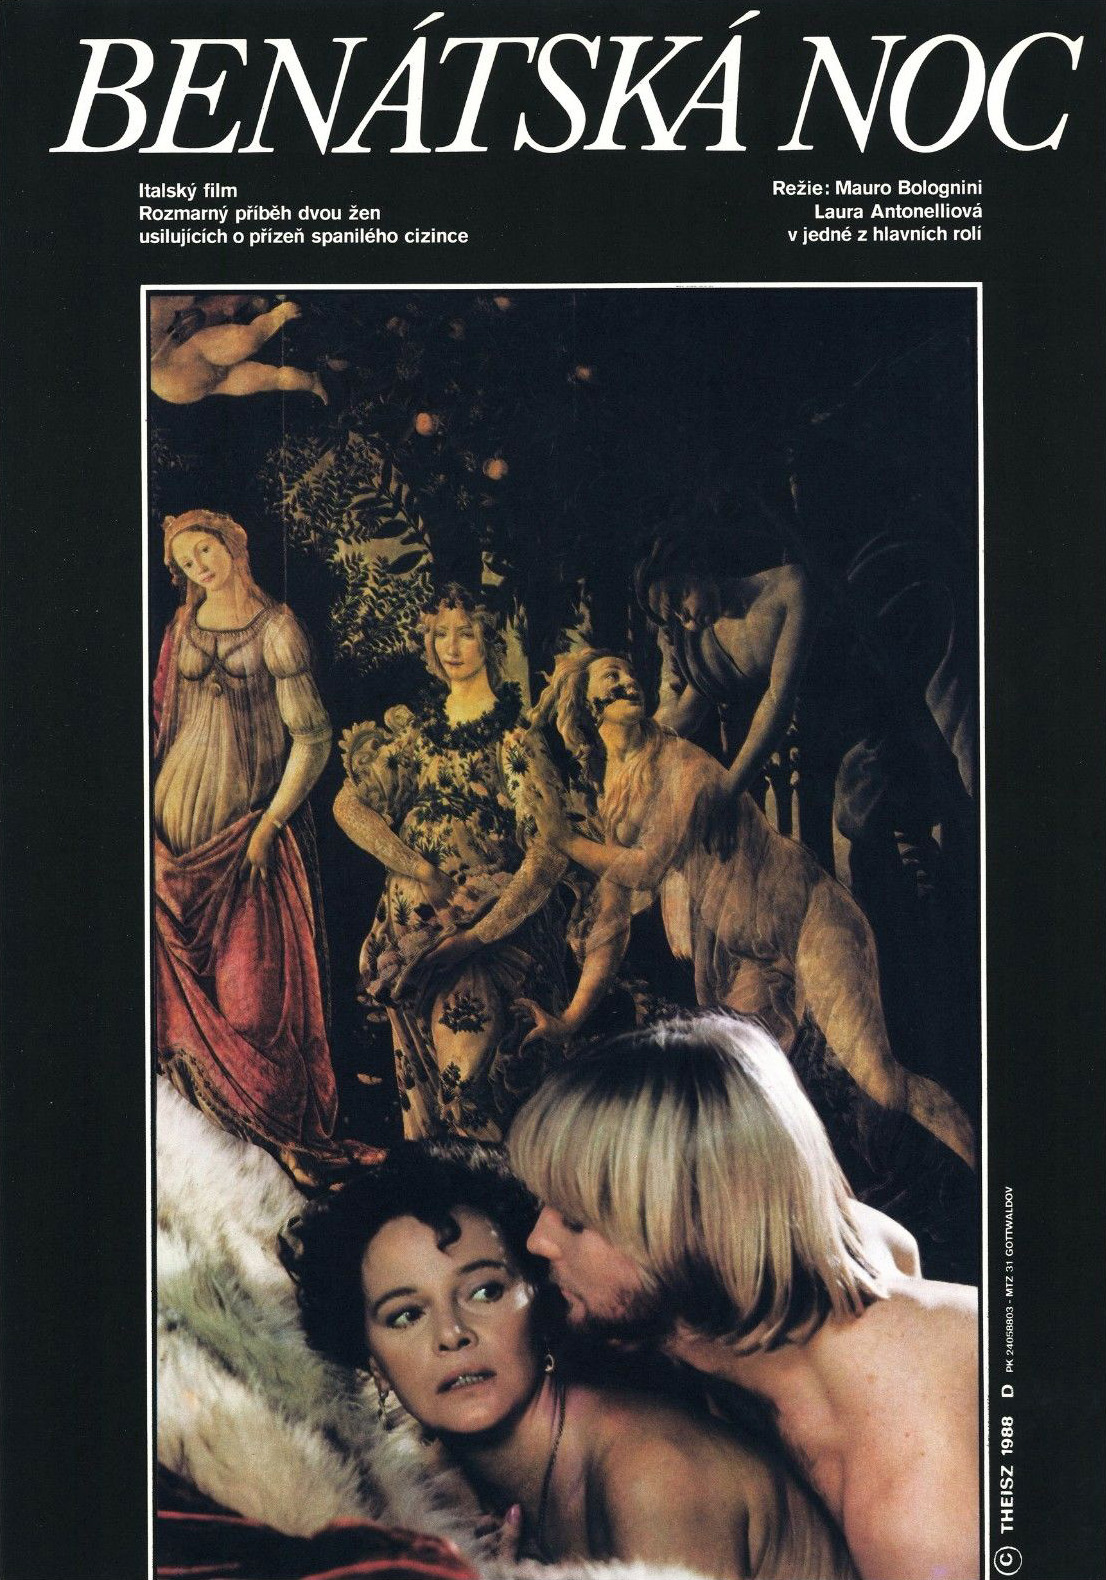 The Venetian Woman (1986) Screenshot 5